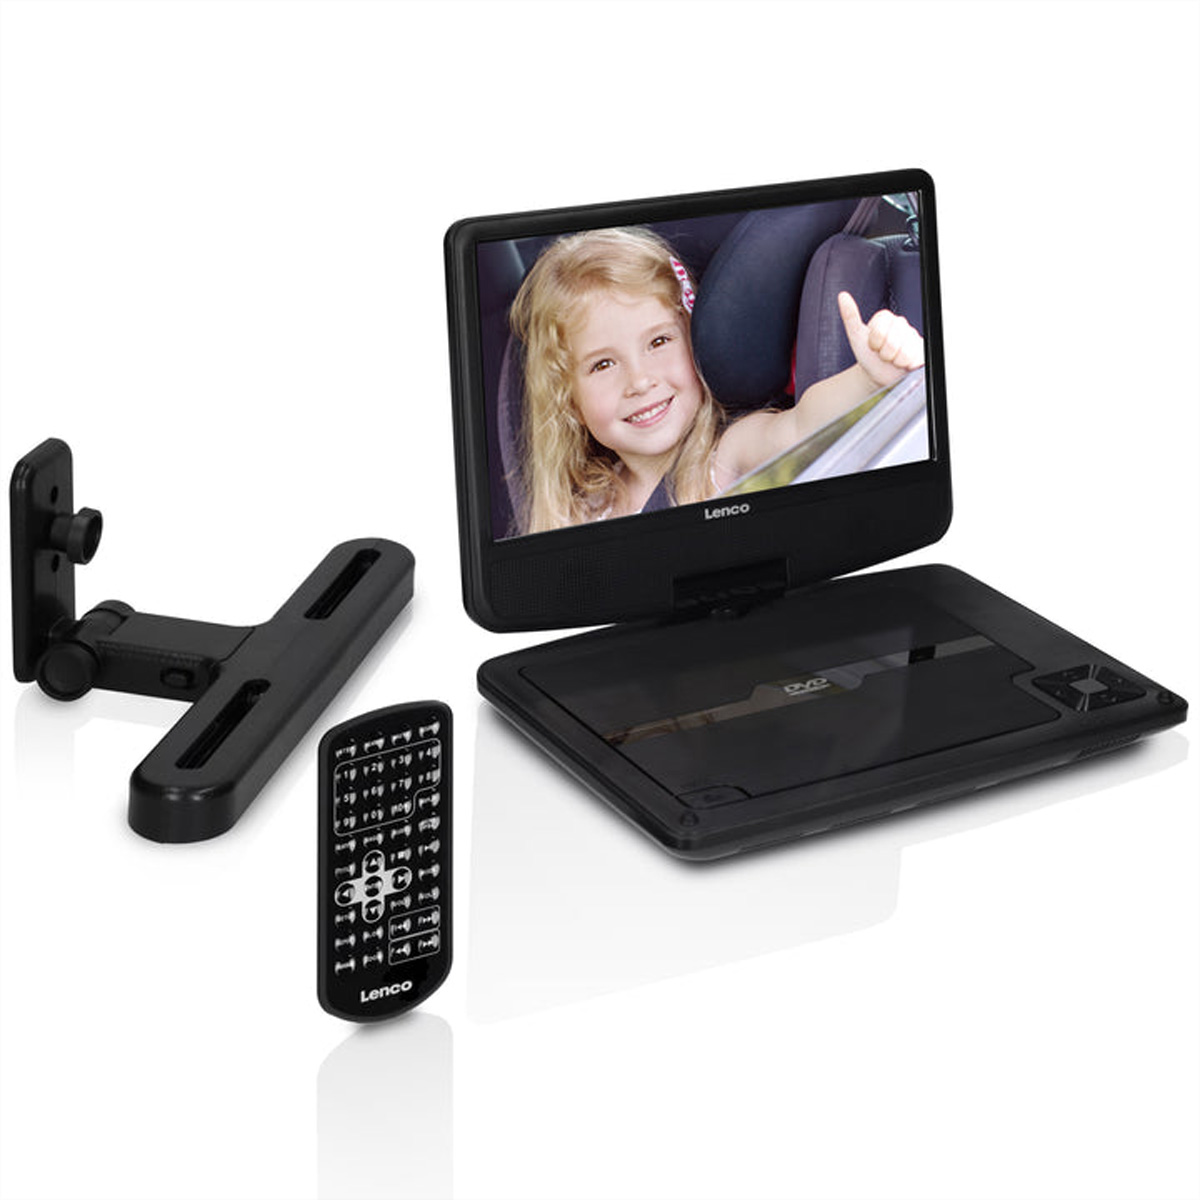 Lenco Portabler DVD player DVP-901BK, schwarz, neues Design, mit Halterung